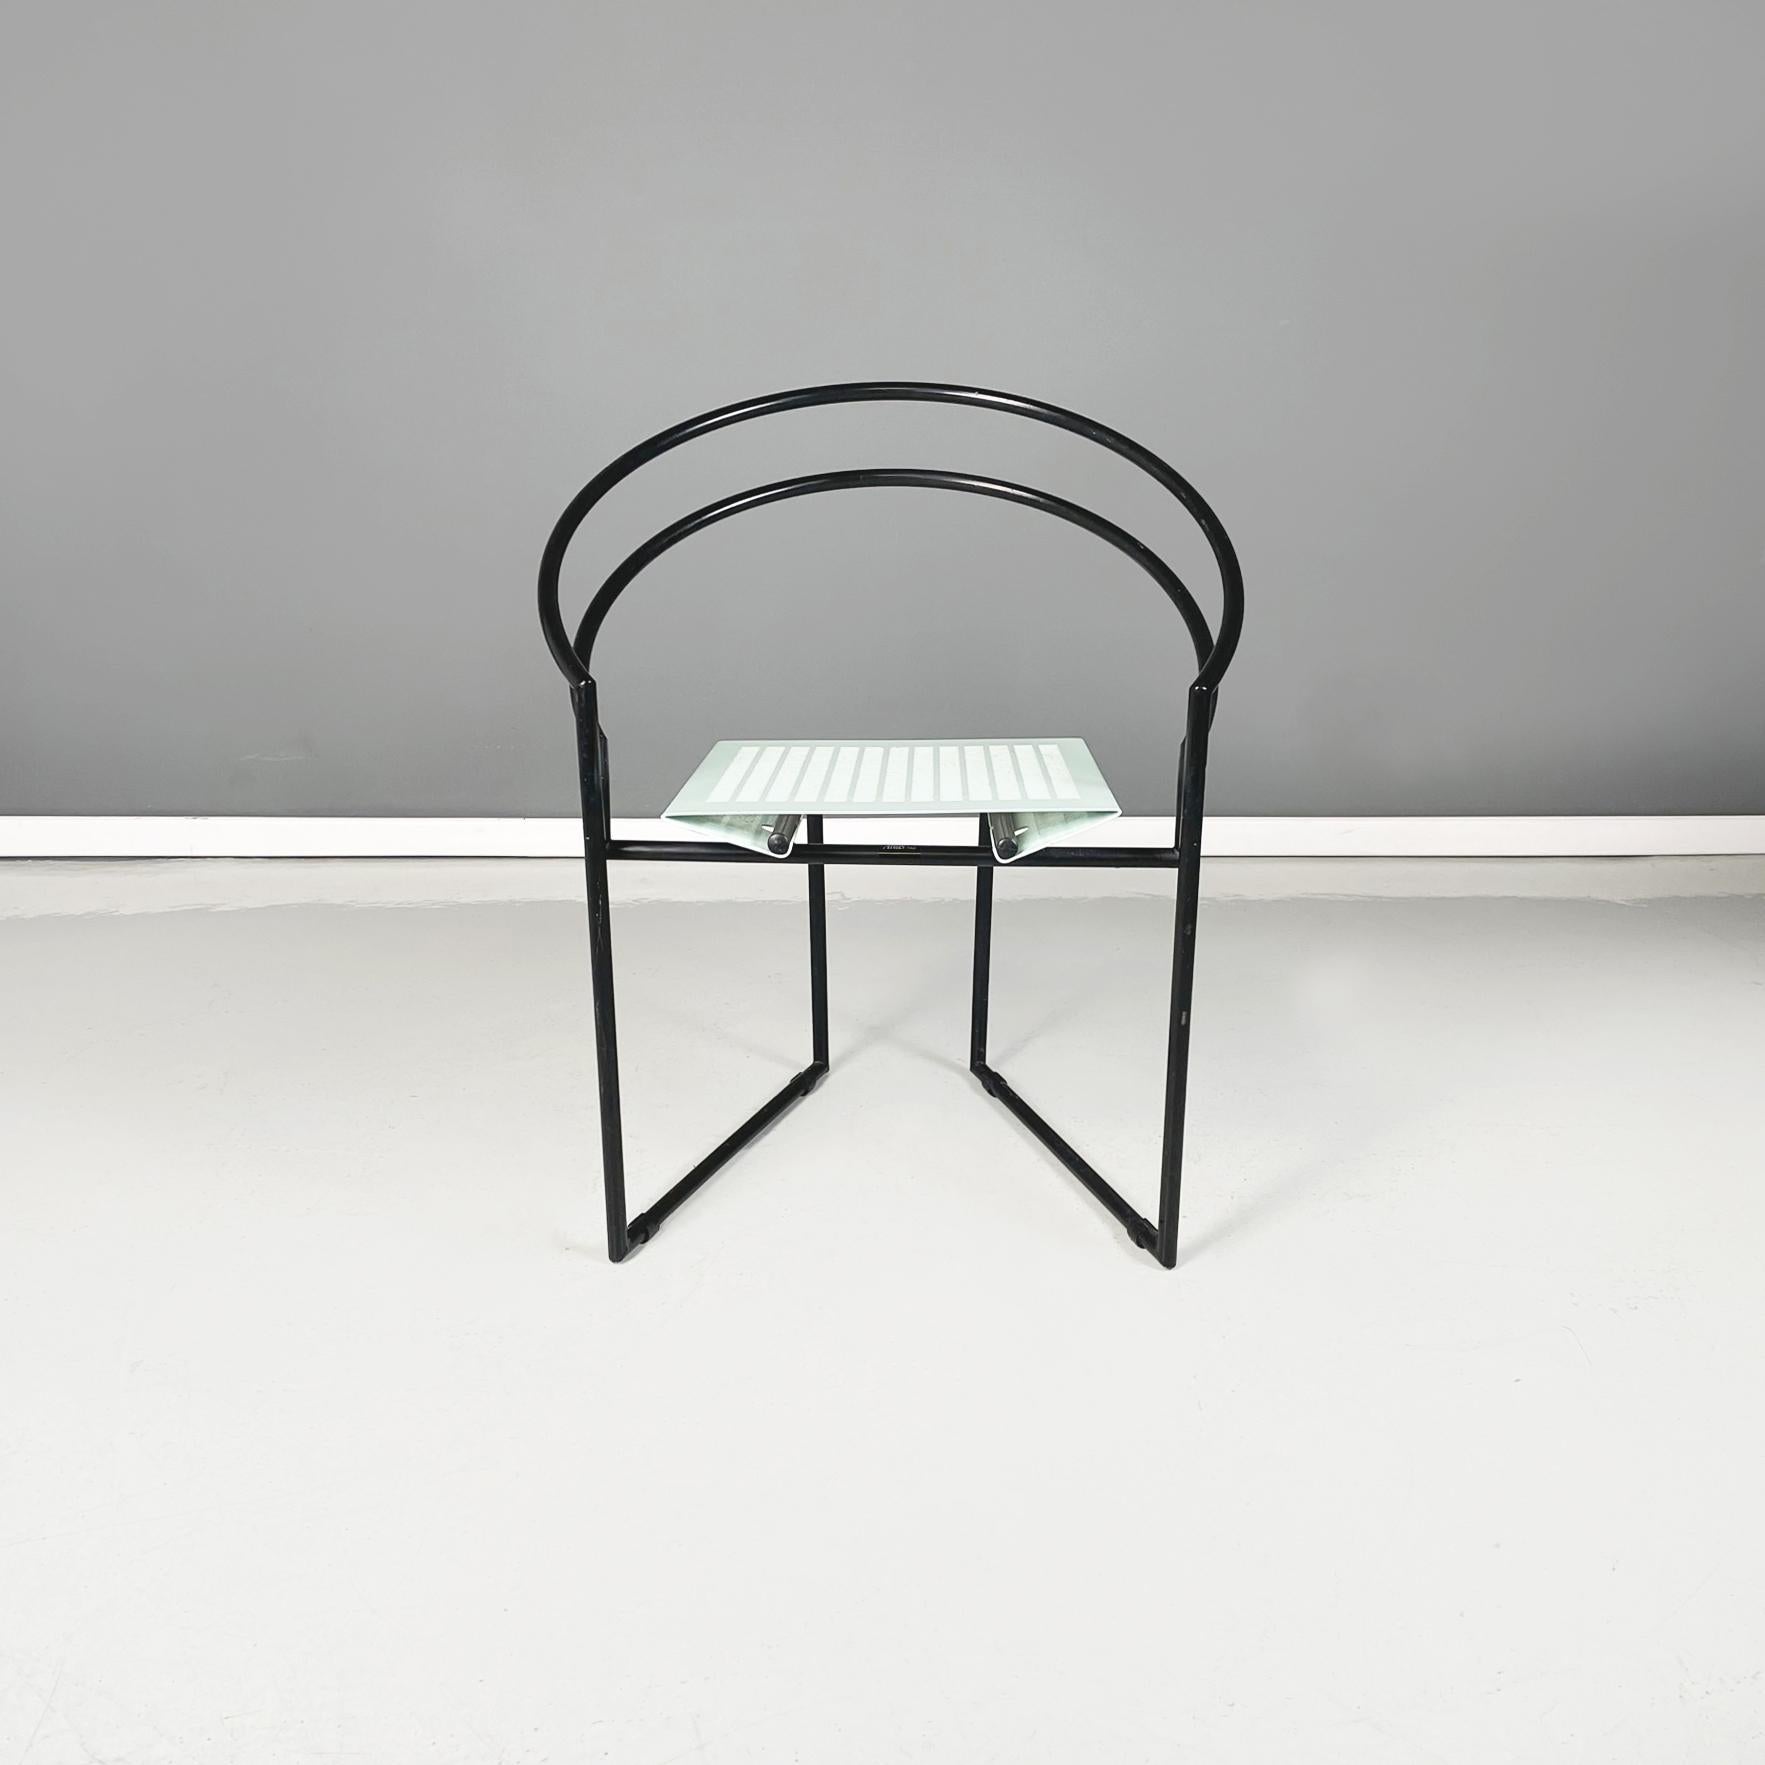 Moderner italienischer Stuhl aus schwarzem und hellblauem Metall Mod. la Tonda von Mario Botta für Alias, 1980er Jahre
Stuhl Mod. la Tonda mit gebogener Rückenlehne und Beinen aus schwarz lackiertem Metallrohr. Der Sitz besteht aus einem hellblauen,